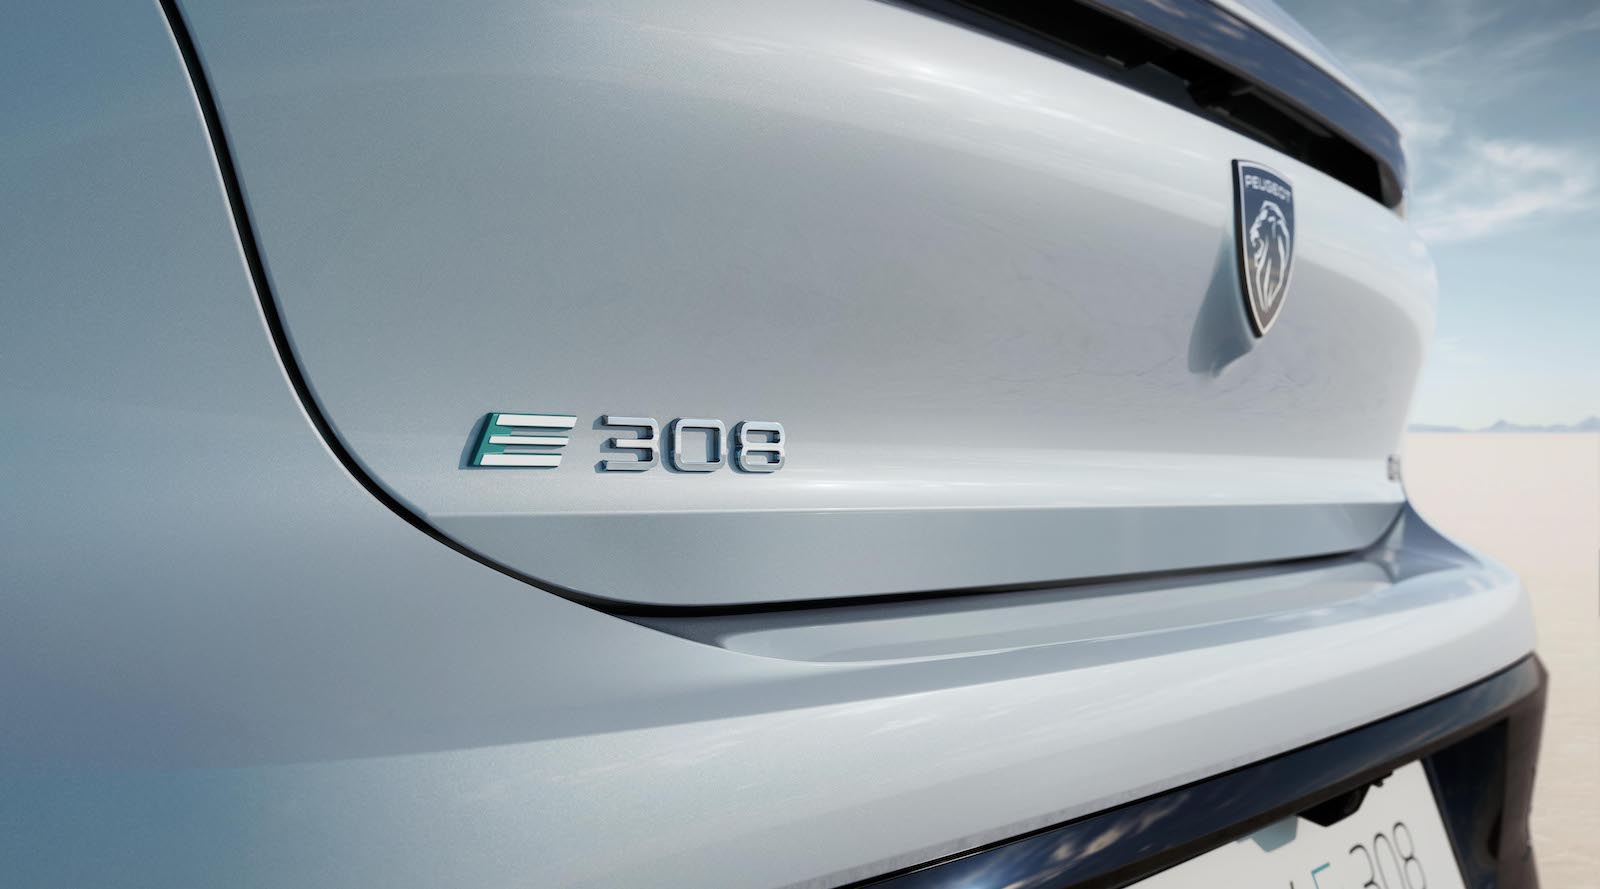 Peugeot e-308 is helemaal elektrisch